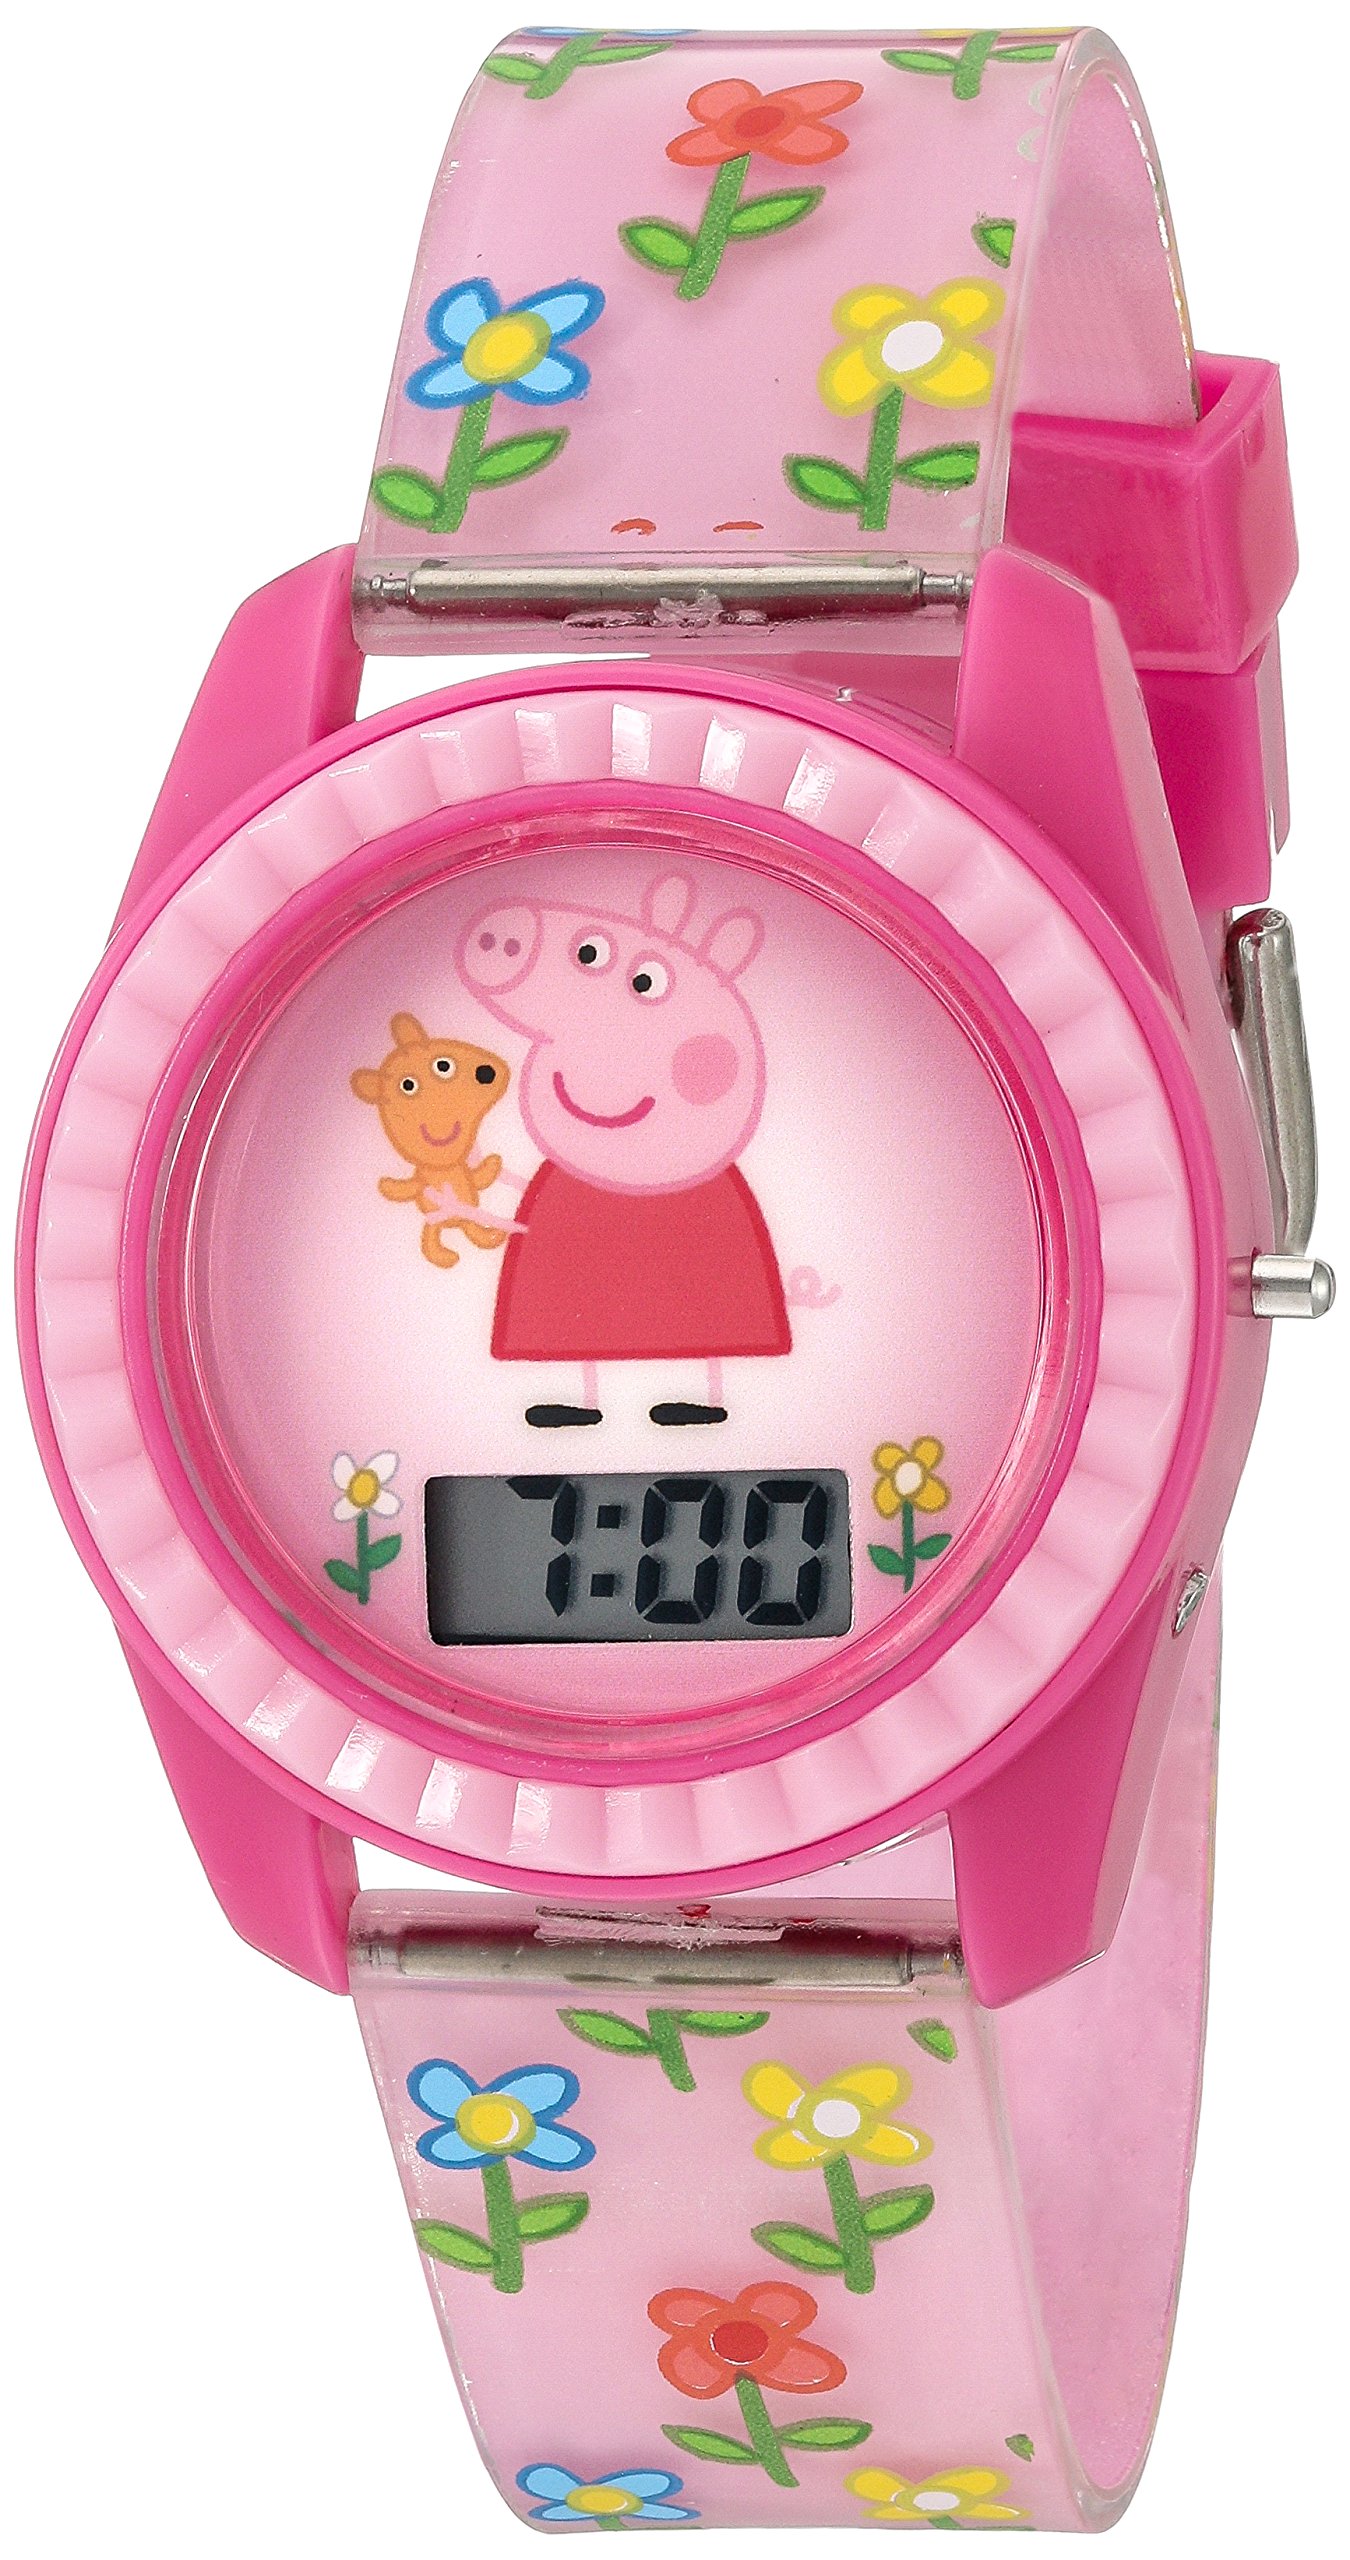 Peppa Pig Girl'sクォーツプラスチック腕時計カラーピンクモデル ppg4005